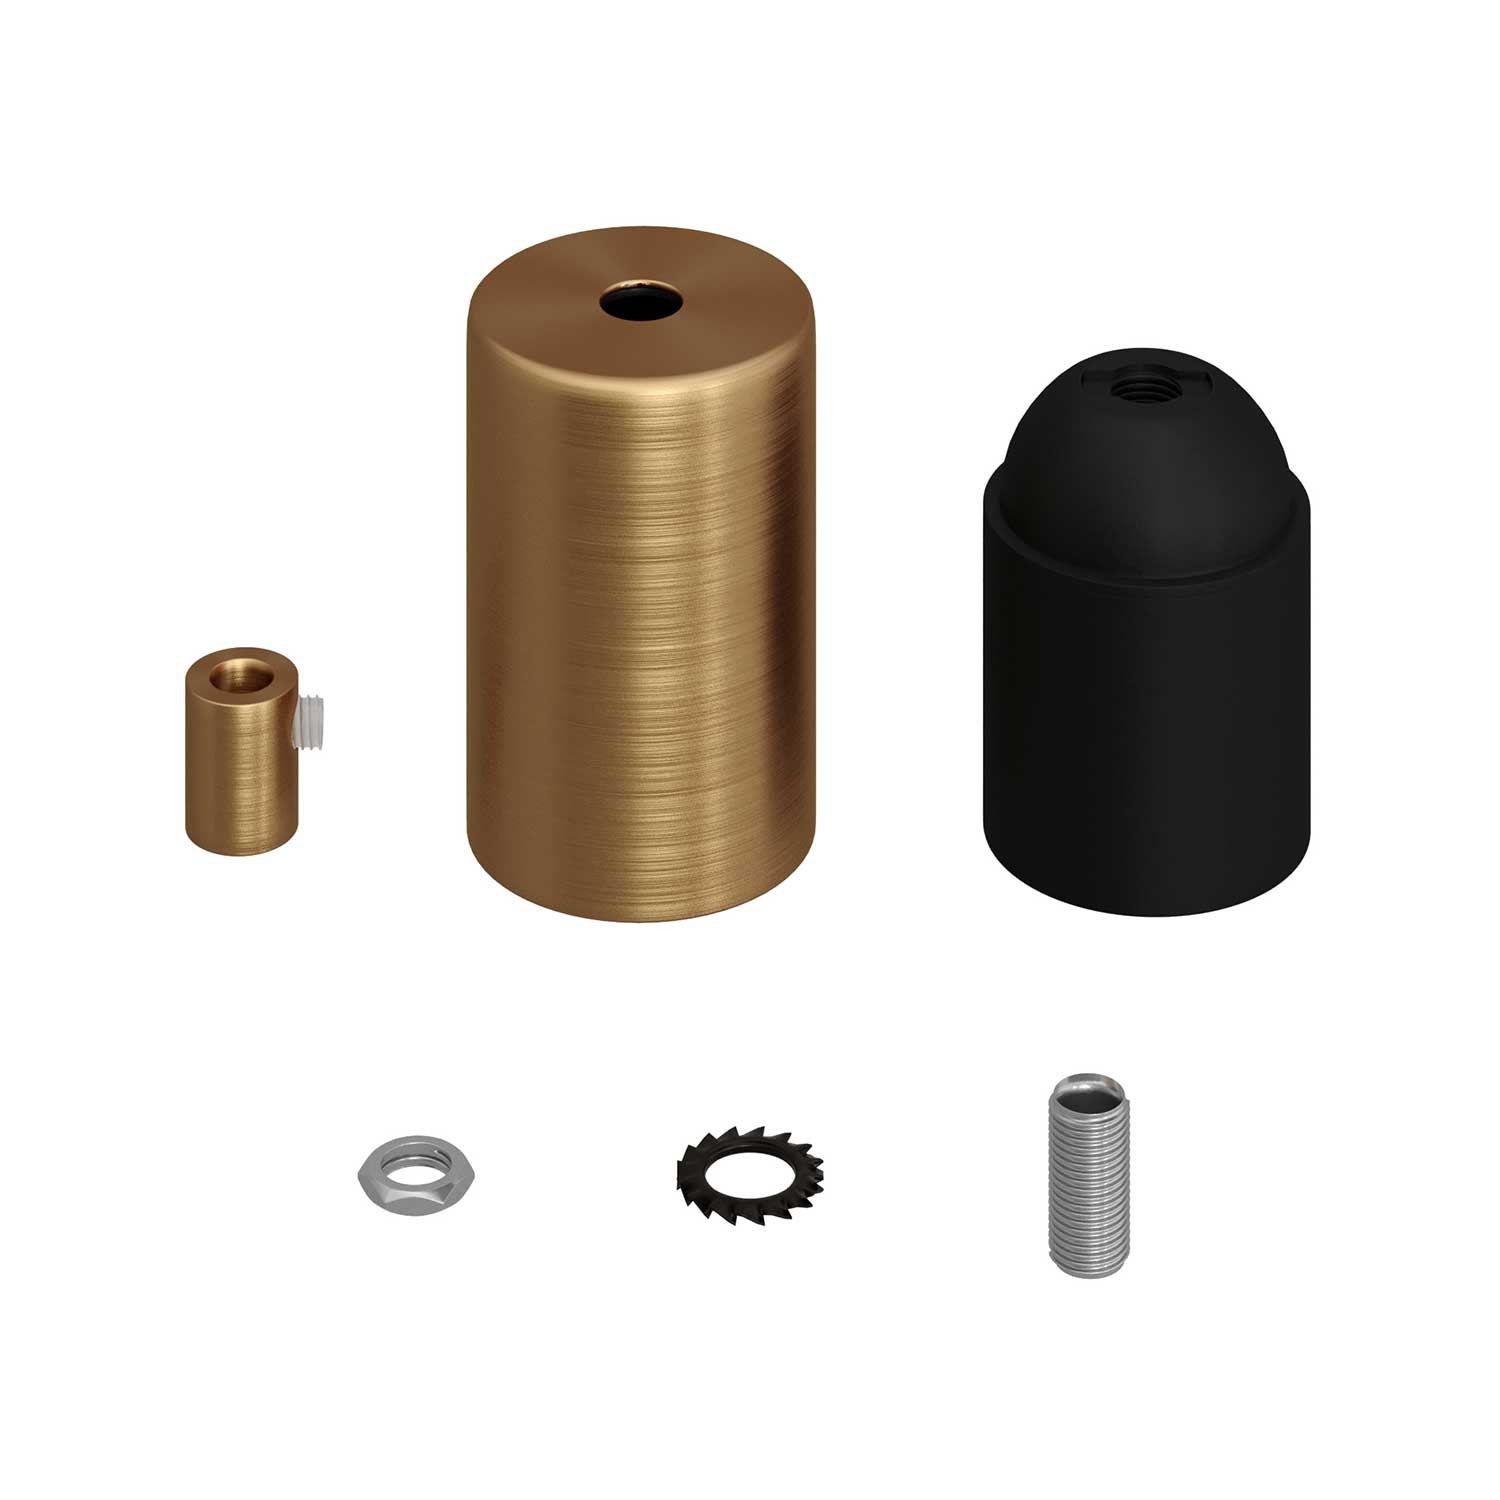 Zylindrisches E27-Lampenfassungs-Kit aus Metall